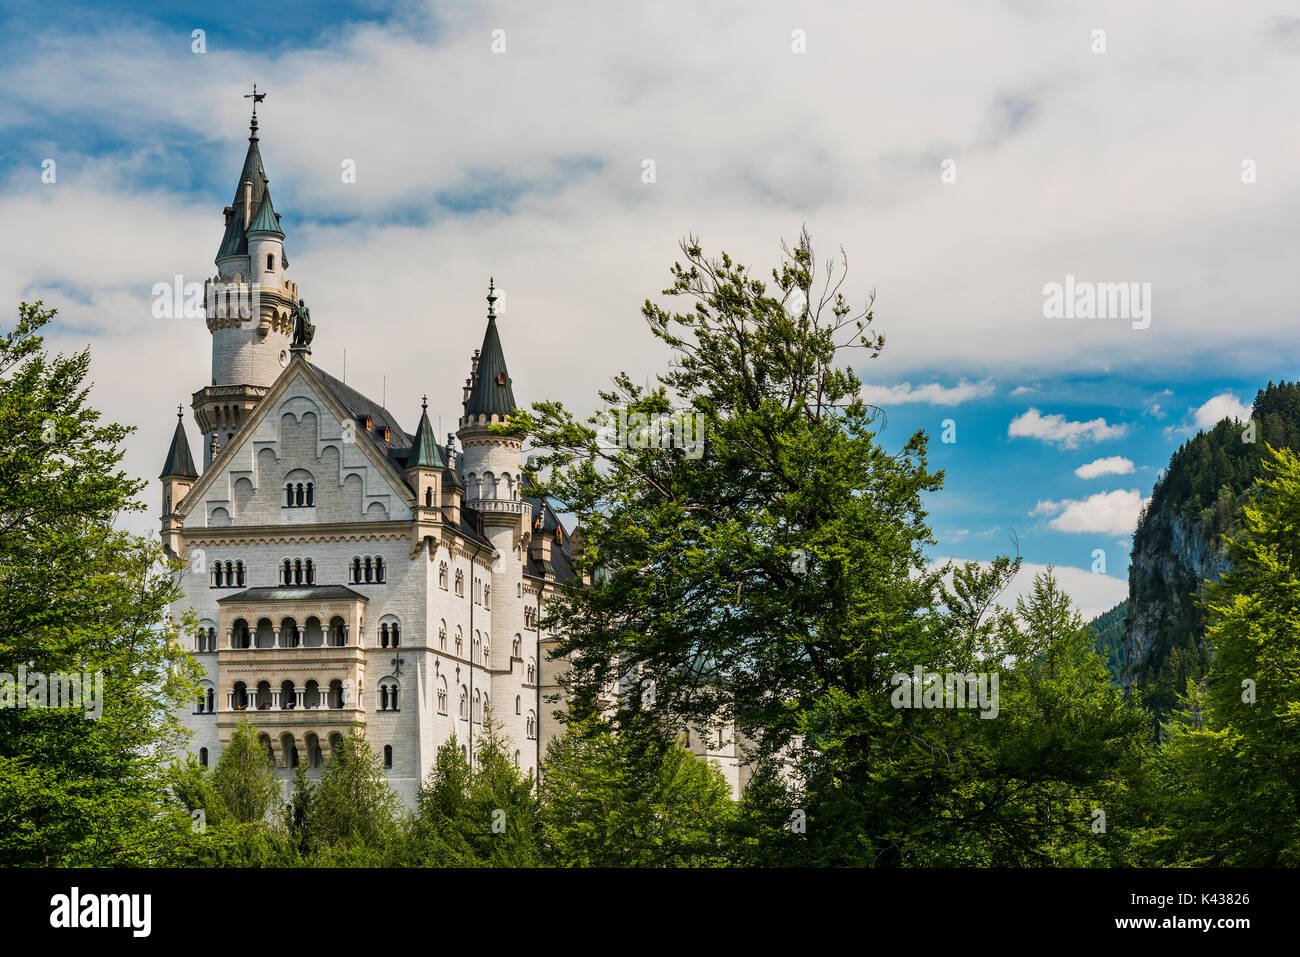 Neuschwanstein Castle or Schloss Neuschwanstein, Schwangau, Bavaria, Germany Stock Photo